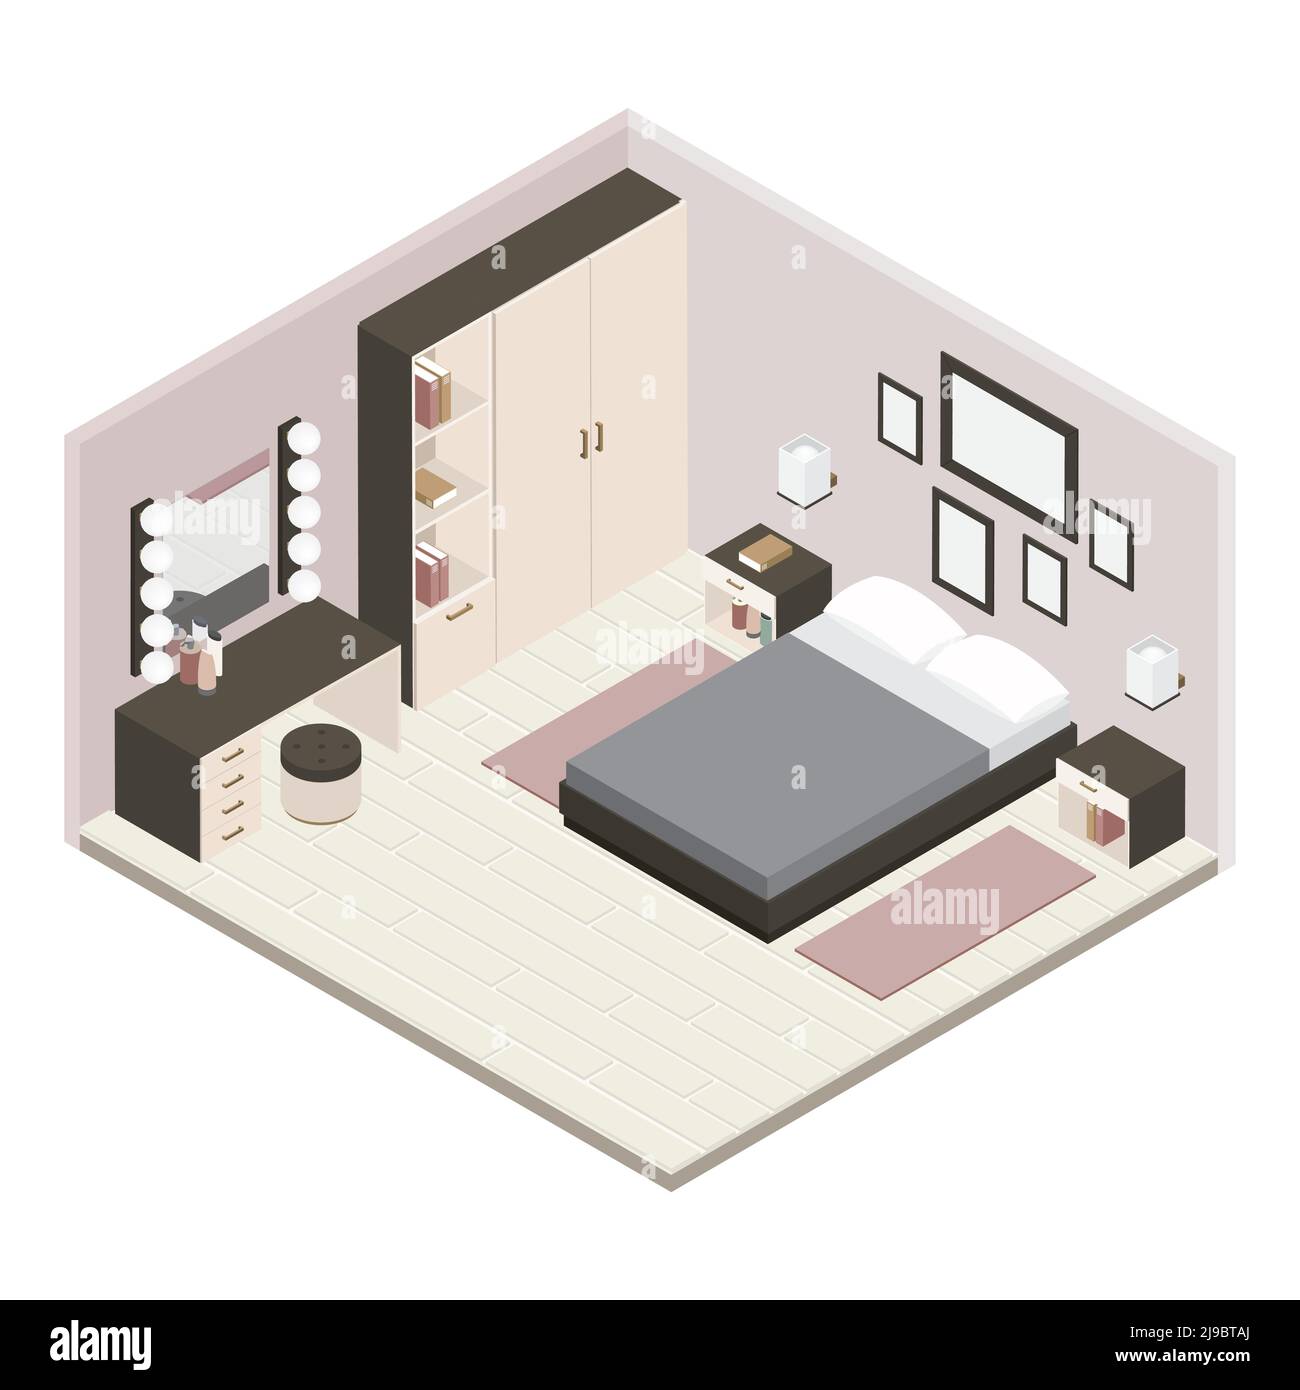 L'intérieur de la chambre isométrique grise est entièrement rénové et meublé d'une chambre avec illustration vectorielle de mobilier Illustration de Vecteur